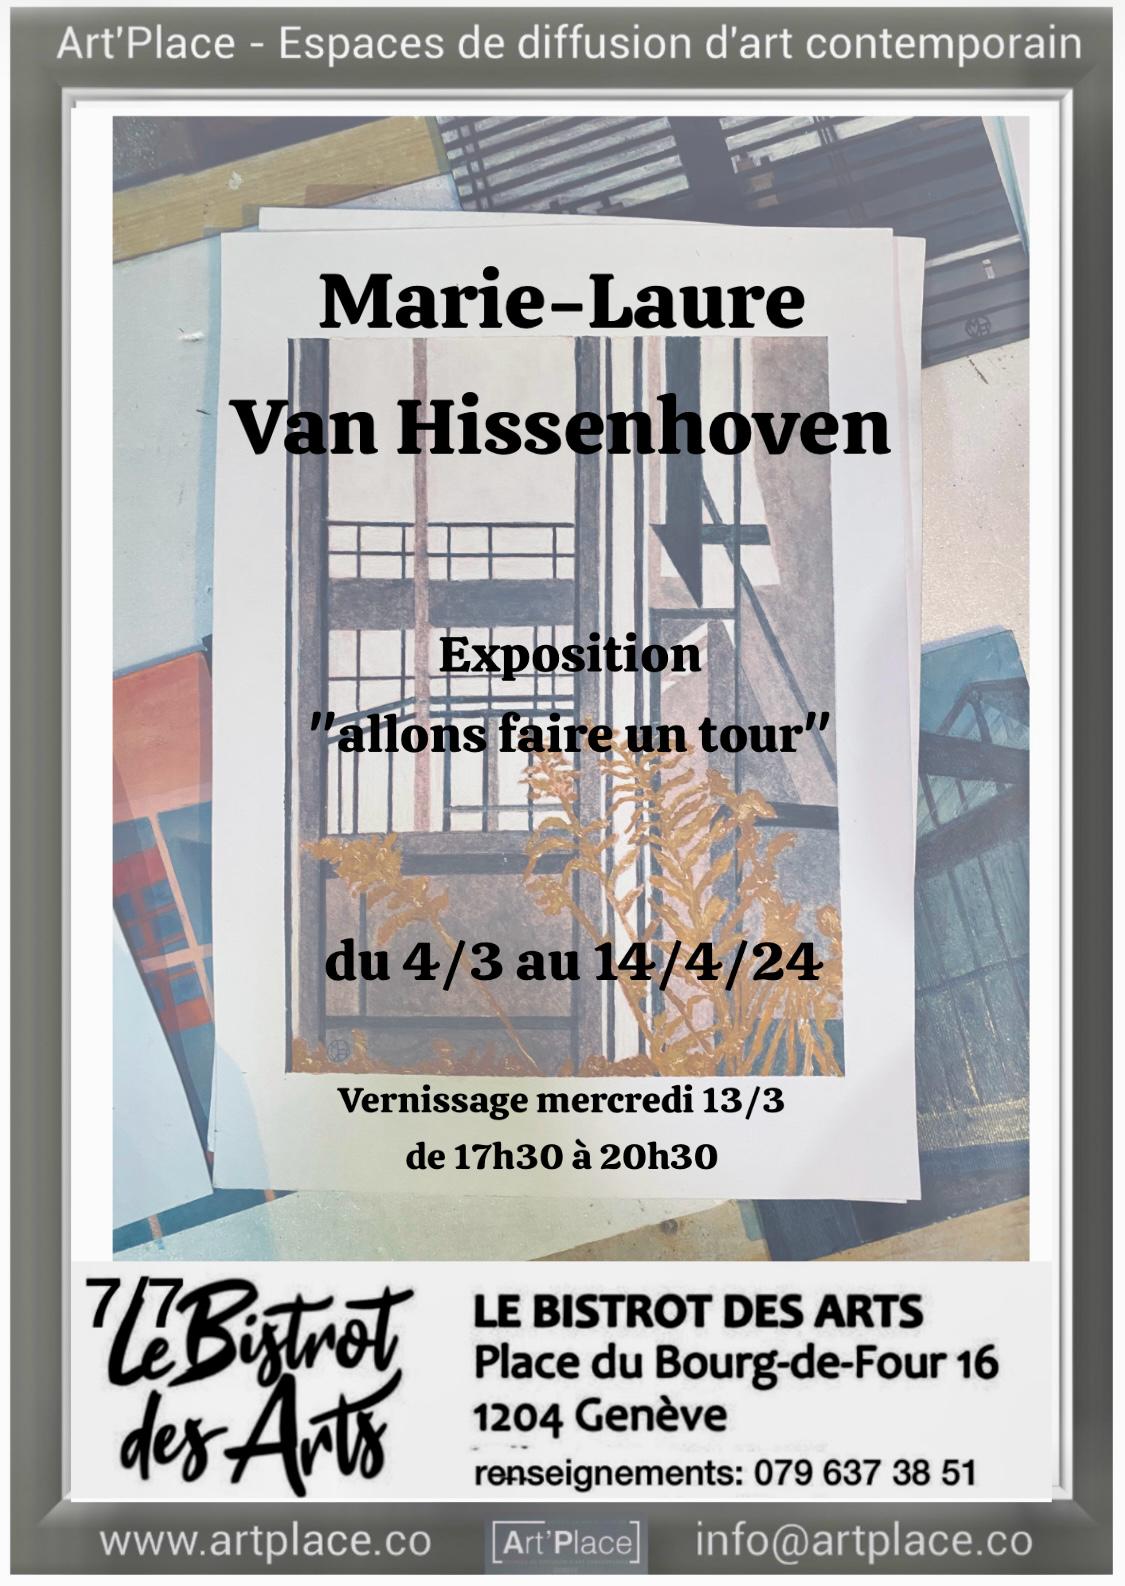 _allons faire un tour_,exposition du 4 mars au 14 avril 2024 Café des Arts, Place du Bourg-de-Four, 16